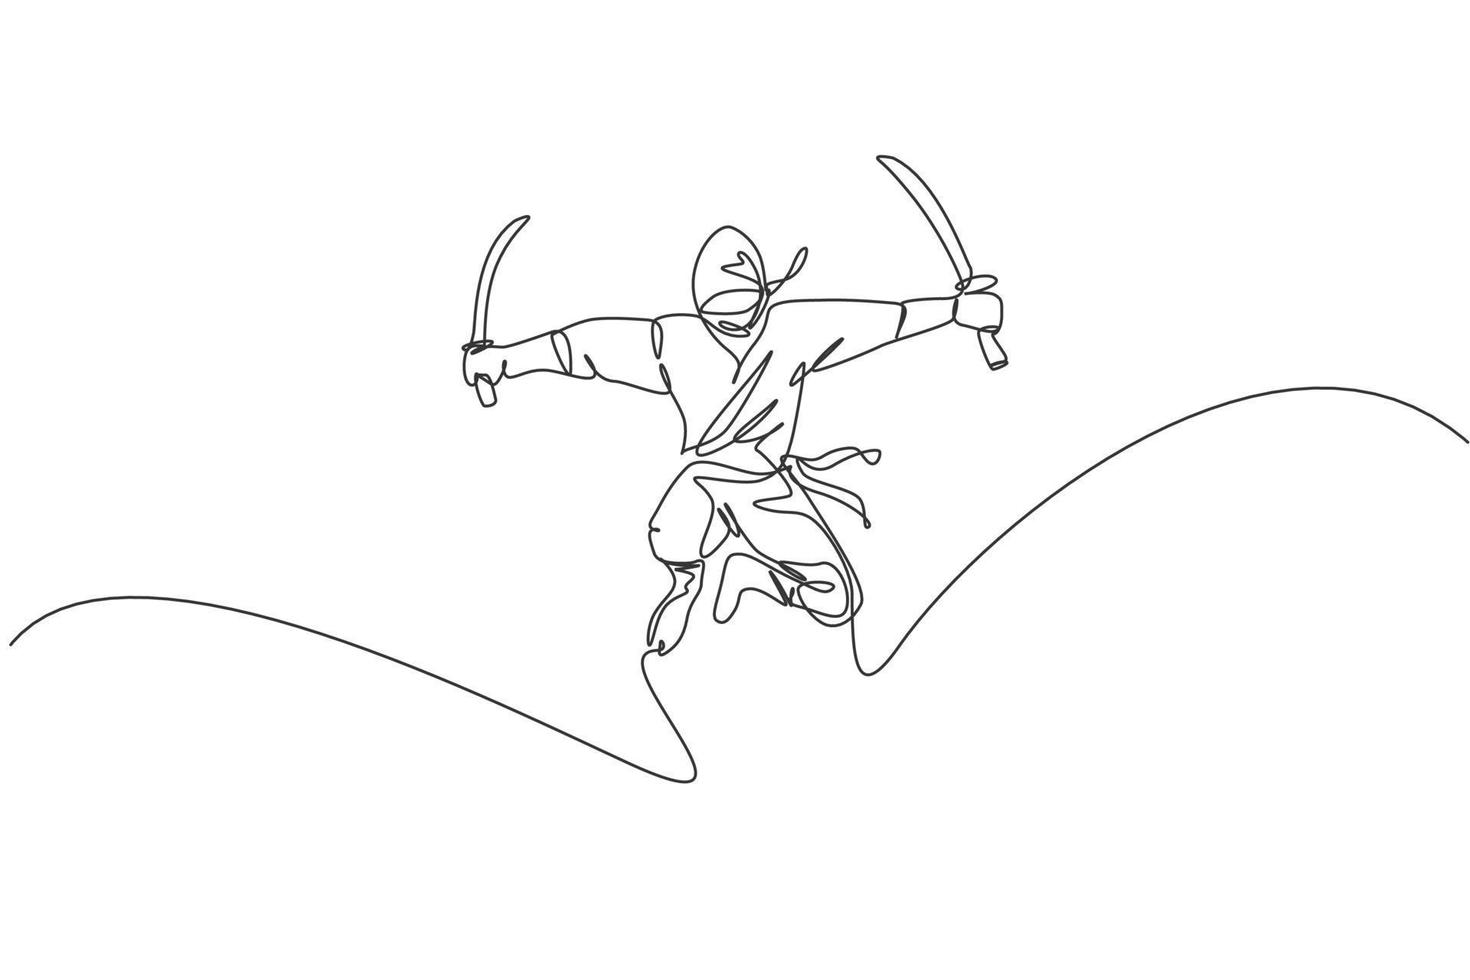 disegno a linea continua singola del giovane guerriero ninja della cultura giapponese su costume maschera con posa di attacco in salto. concetto di samurai di combattimento di arte marziale. illustrazione vettoriale di disegno di una linea alla moda